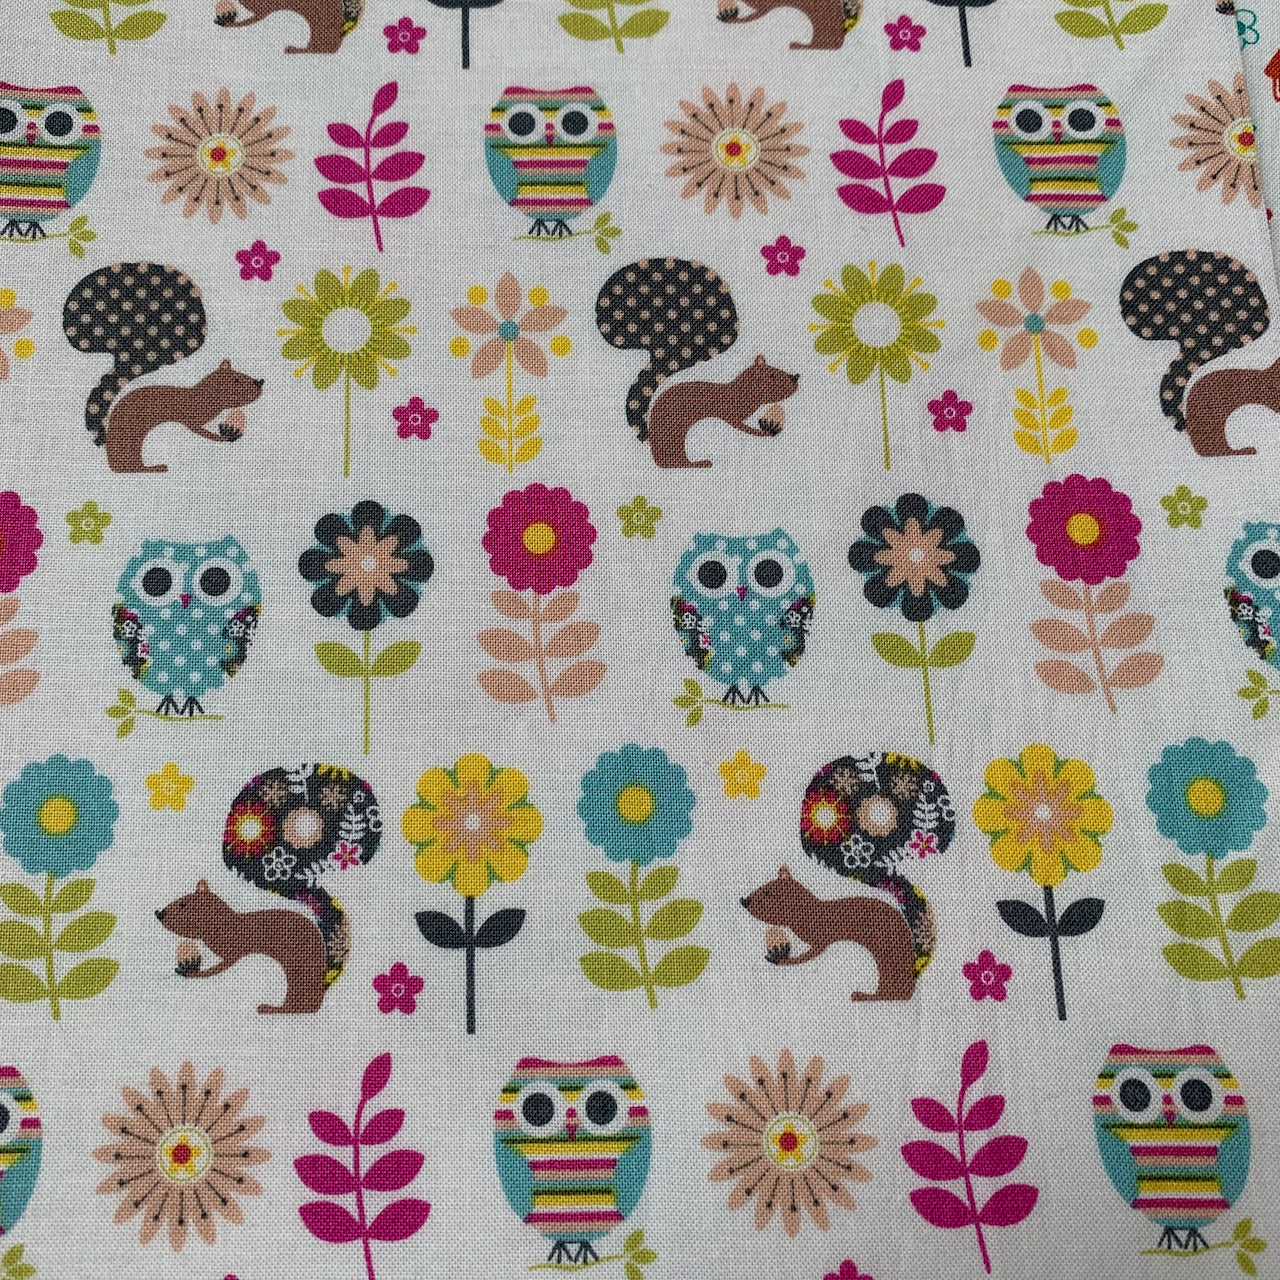 Fabric Felt Sheet - Woodland Friends